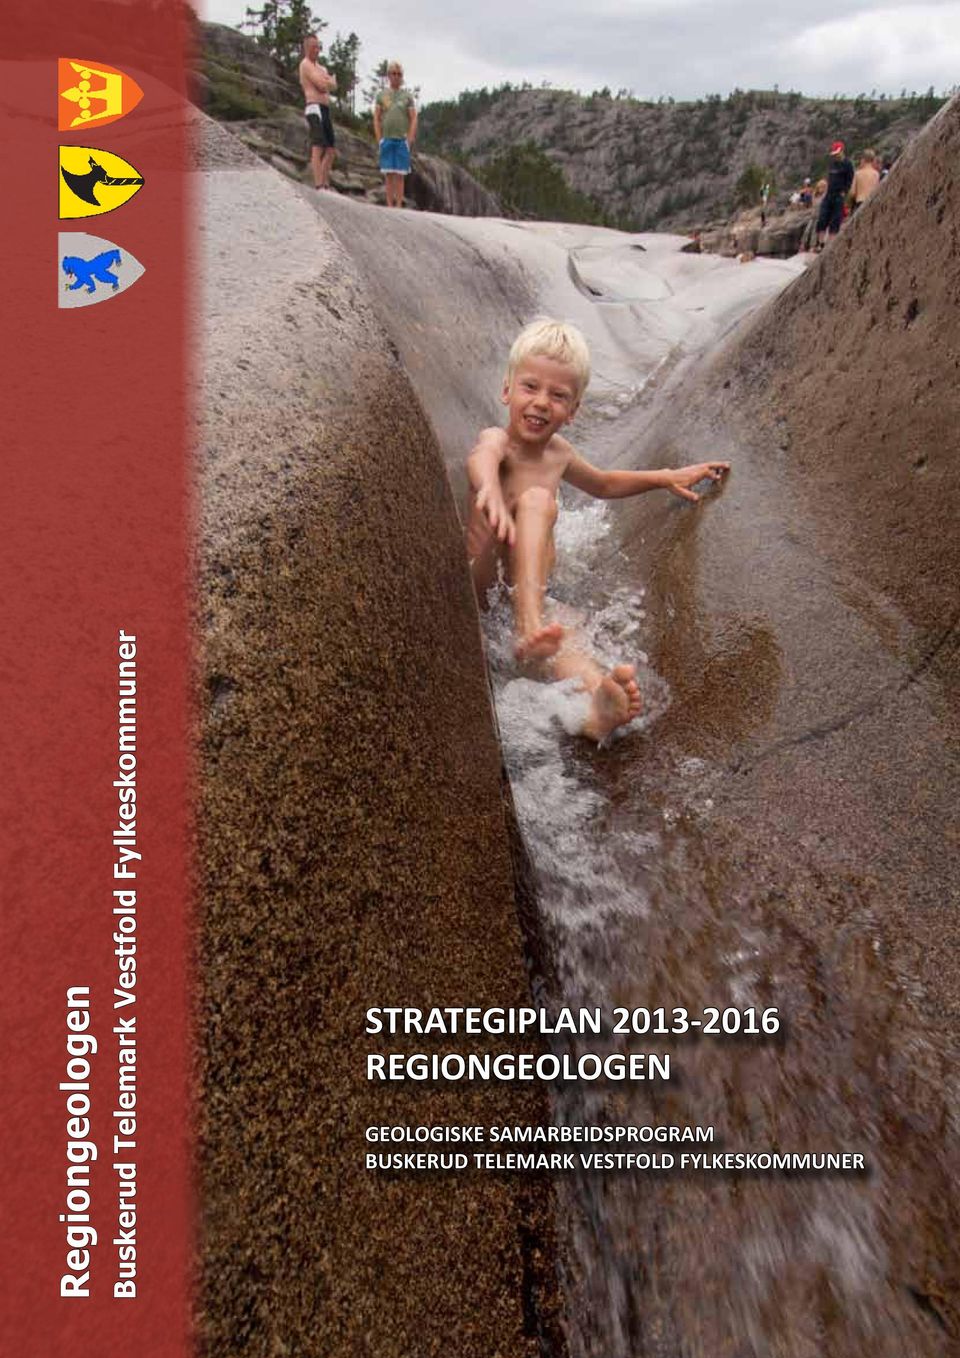 STRATEGIPLAN 2013-2016 REGIONGEOLOGEN GEOLOGISKE